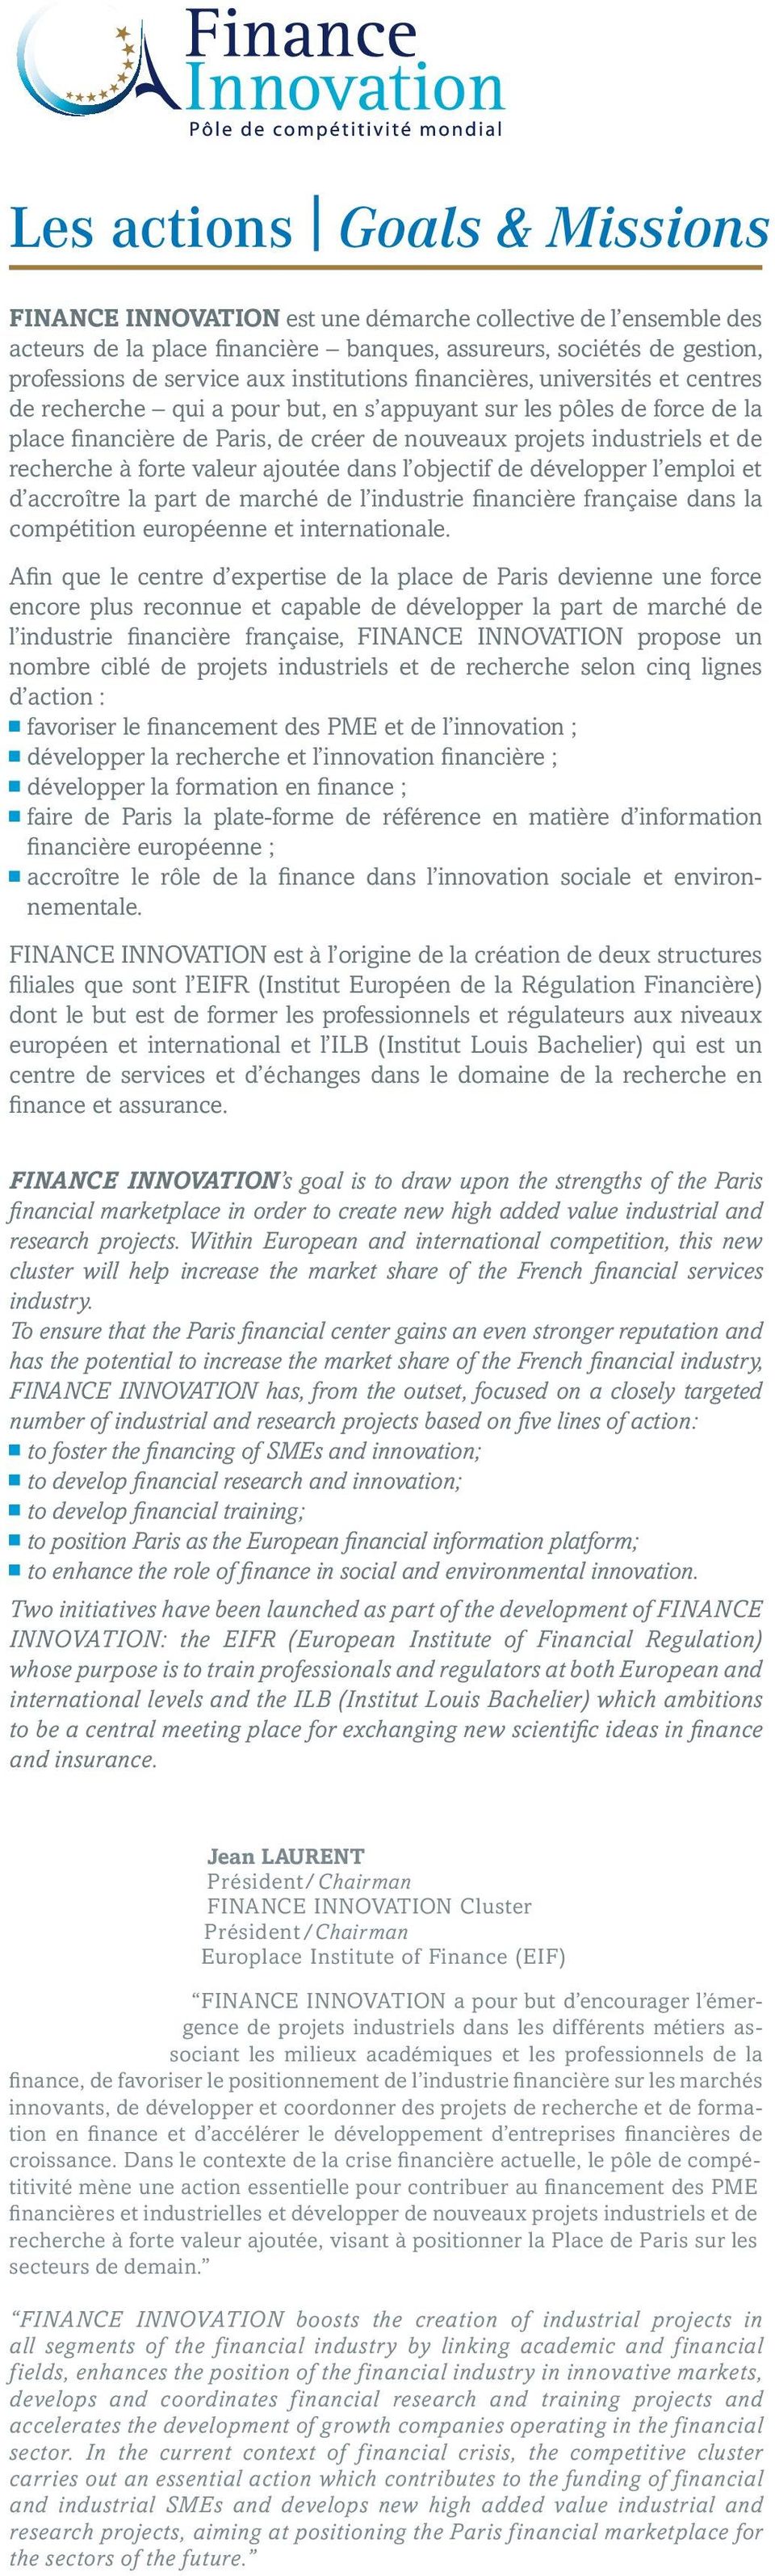 recherche à forte valeur ajoutée dans l objectif de développer l emploi et d accroître la part de marché de l industrie financière française dans la compétition européenne et internationale.